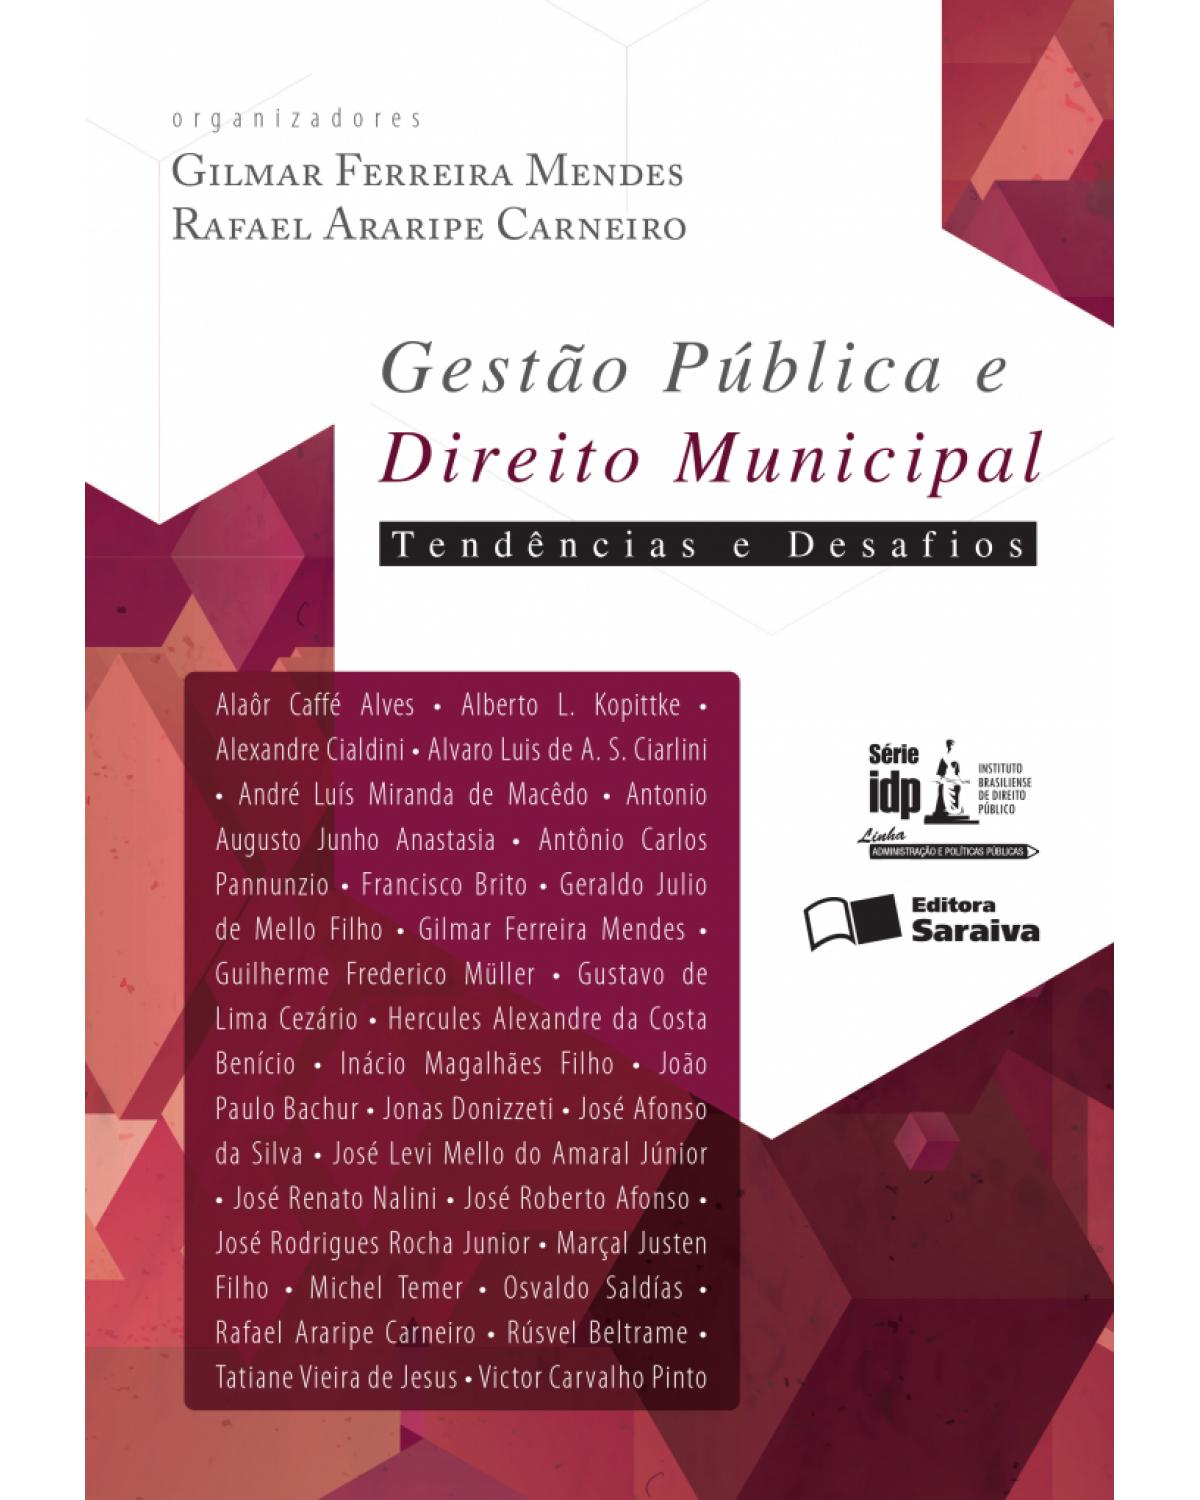 Gestão pública e direito municipal - tendências e desafios - 1ª Edição | 2016